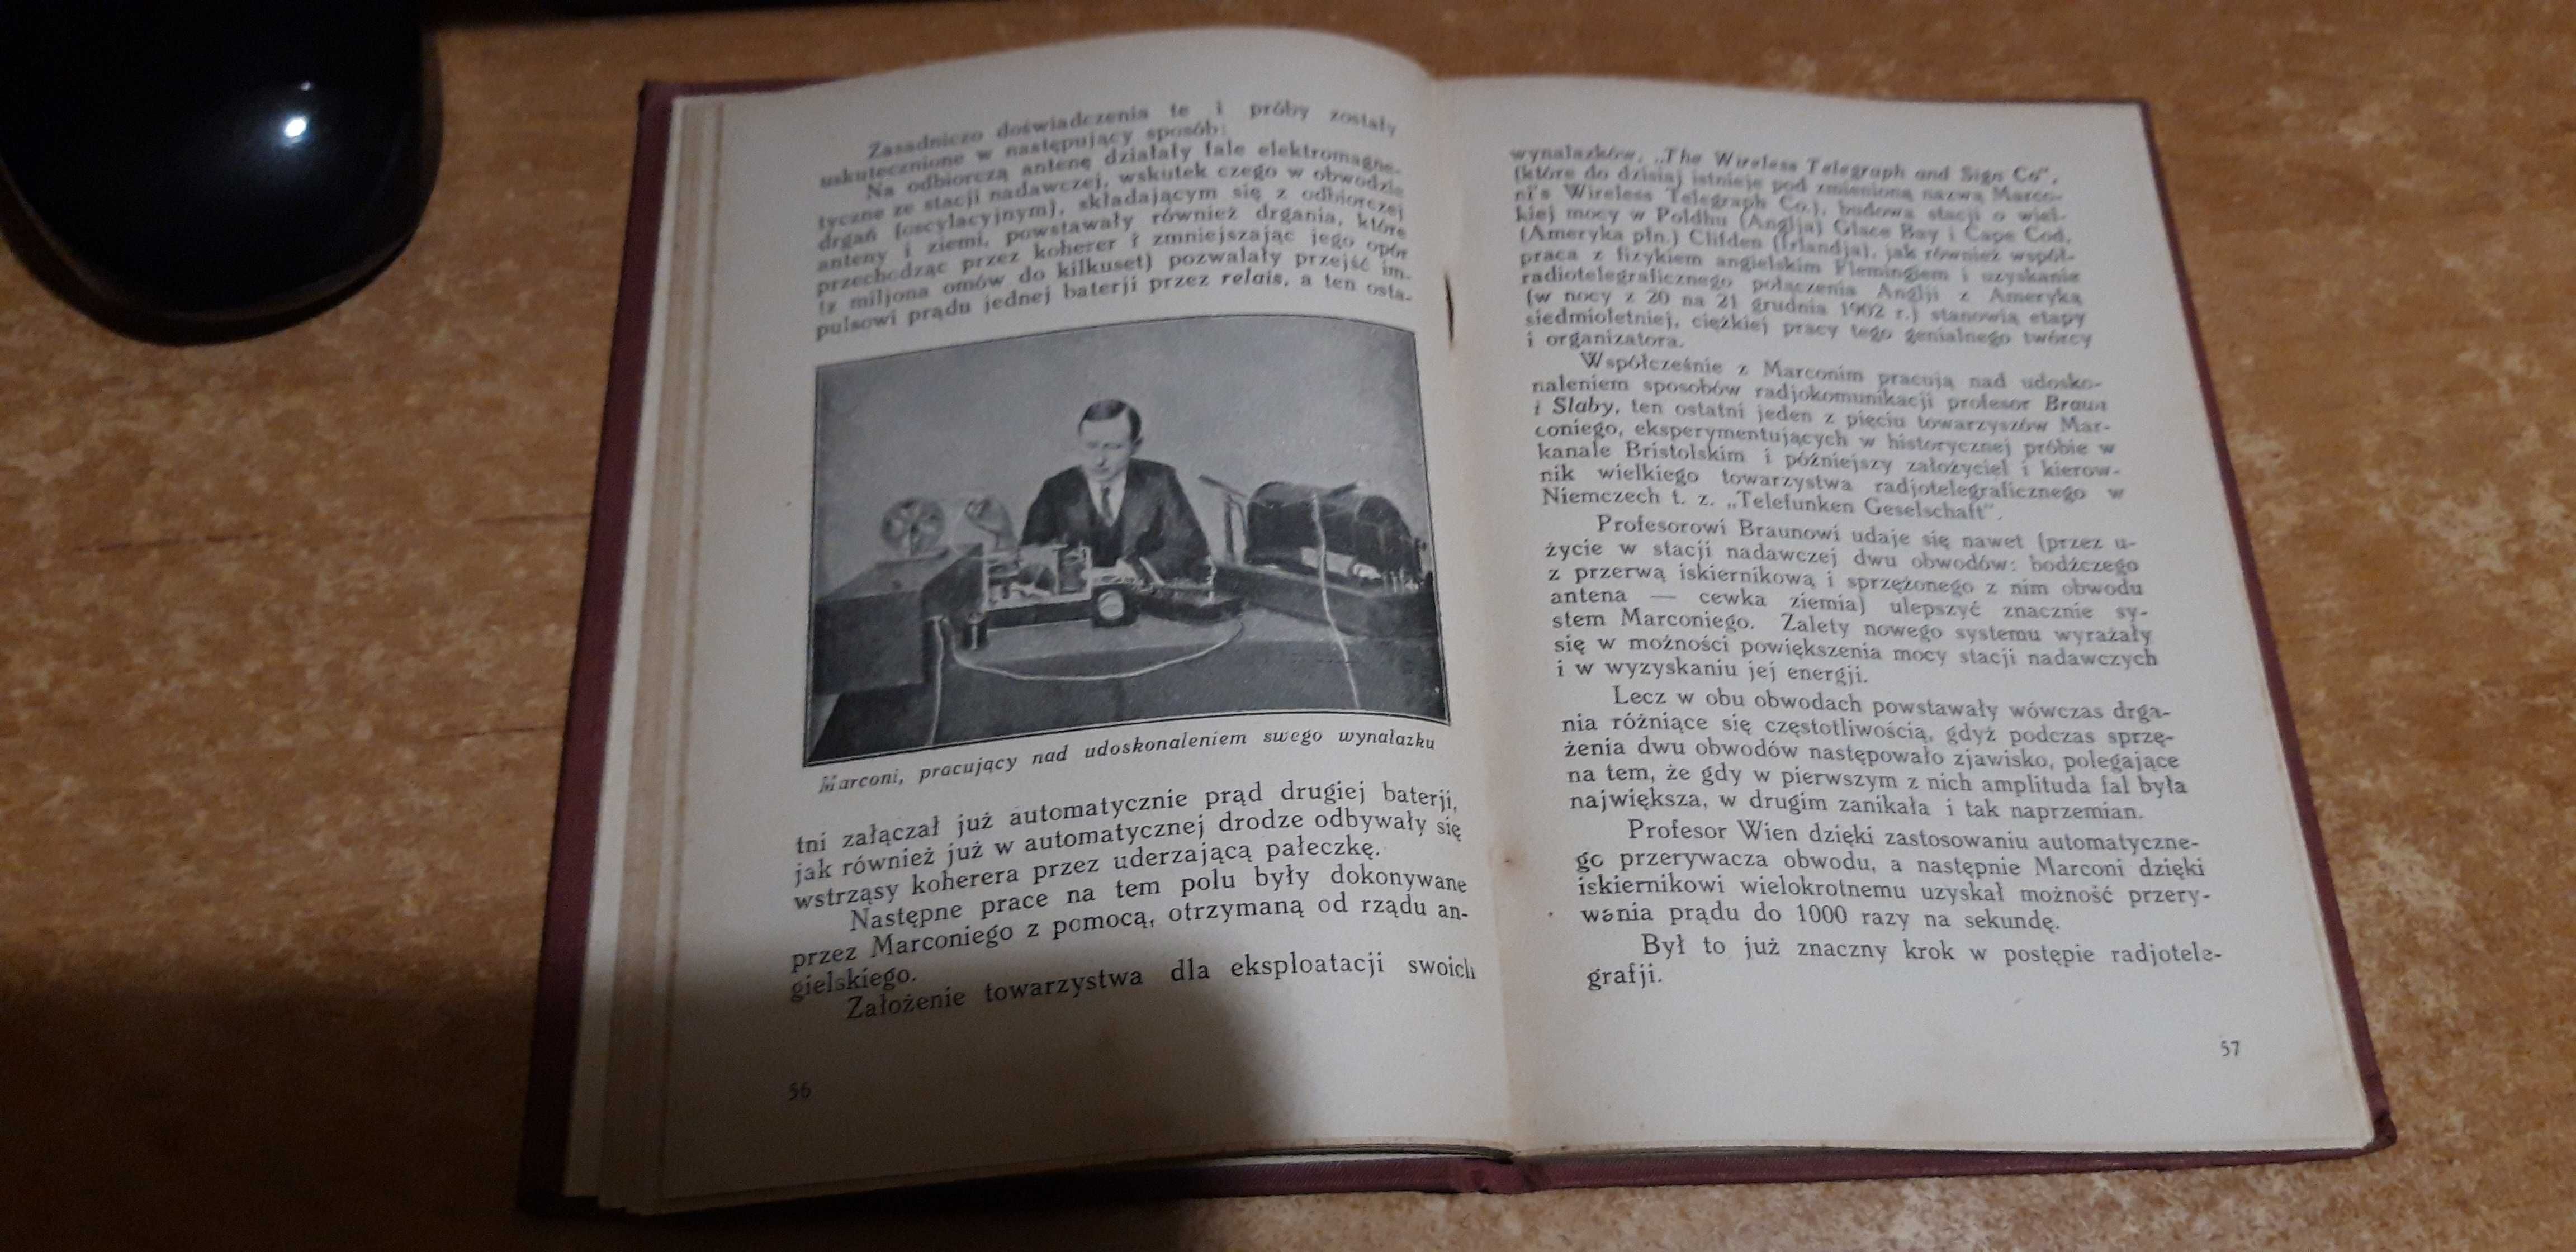 Radjo a życie - S. Burzyński - 1925,opr.wyd.,ilustracje